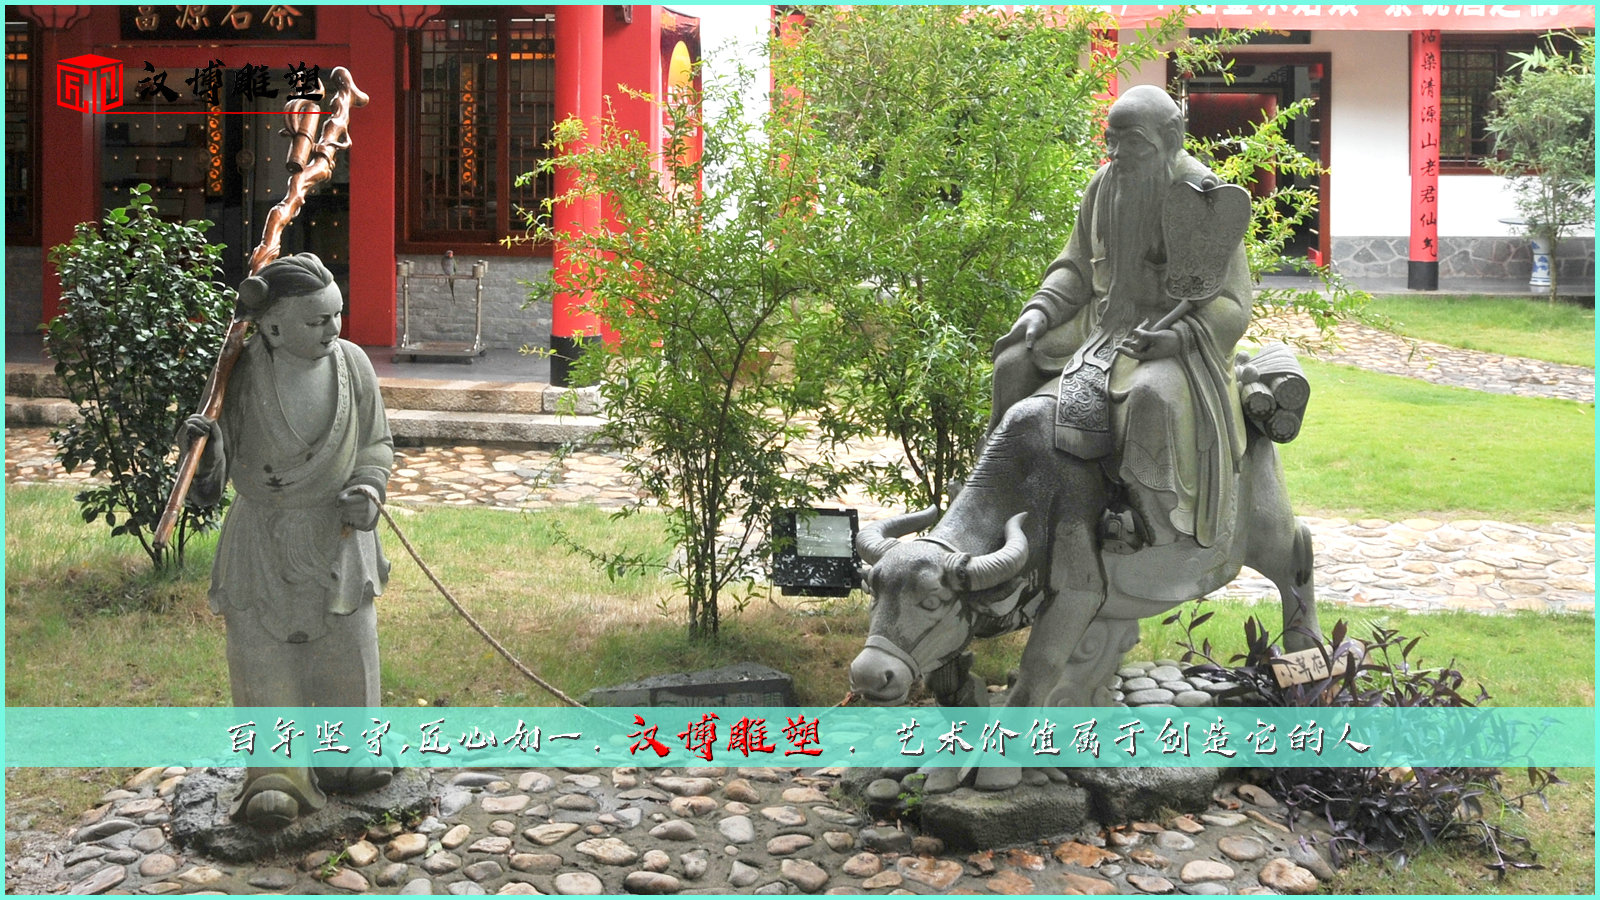 文化艺术雕塑,公园景观雕像,石雕牛雕像